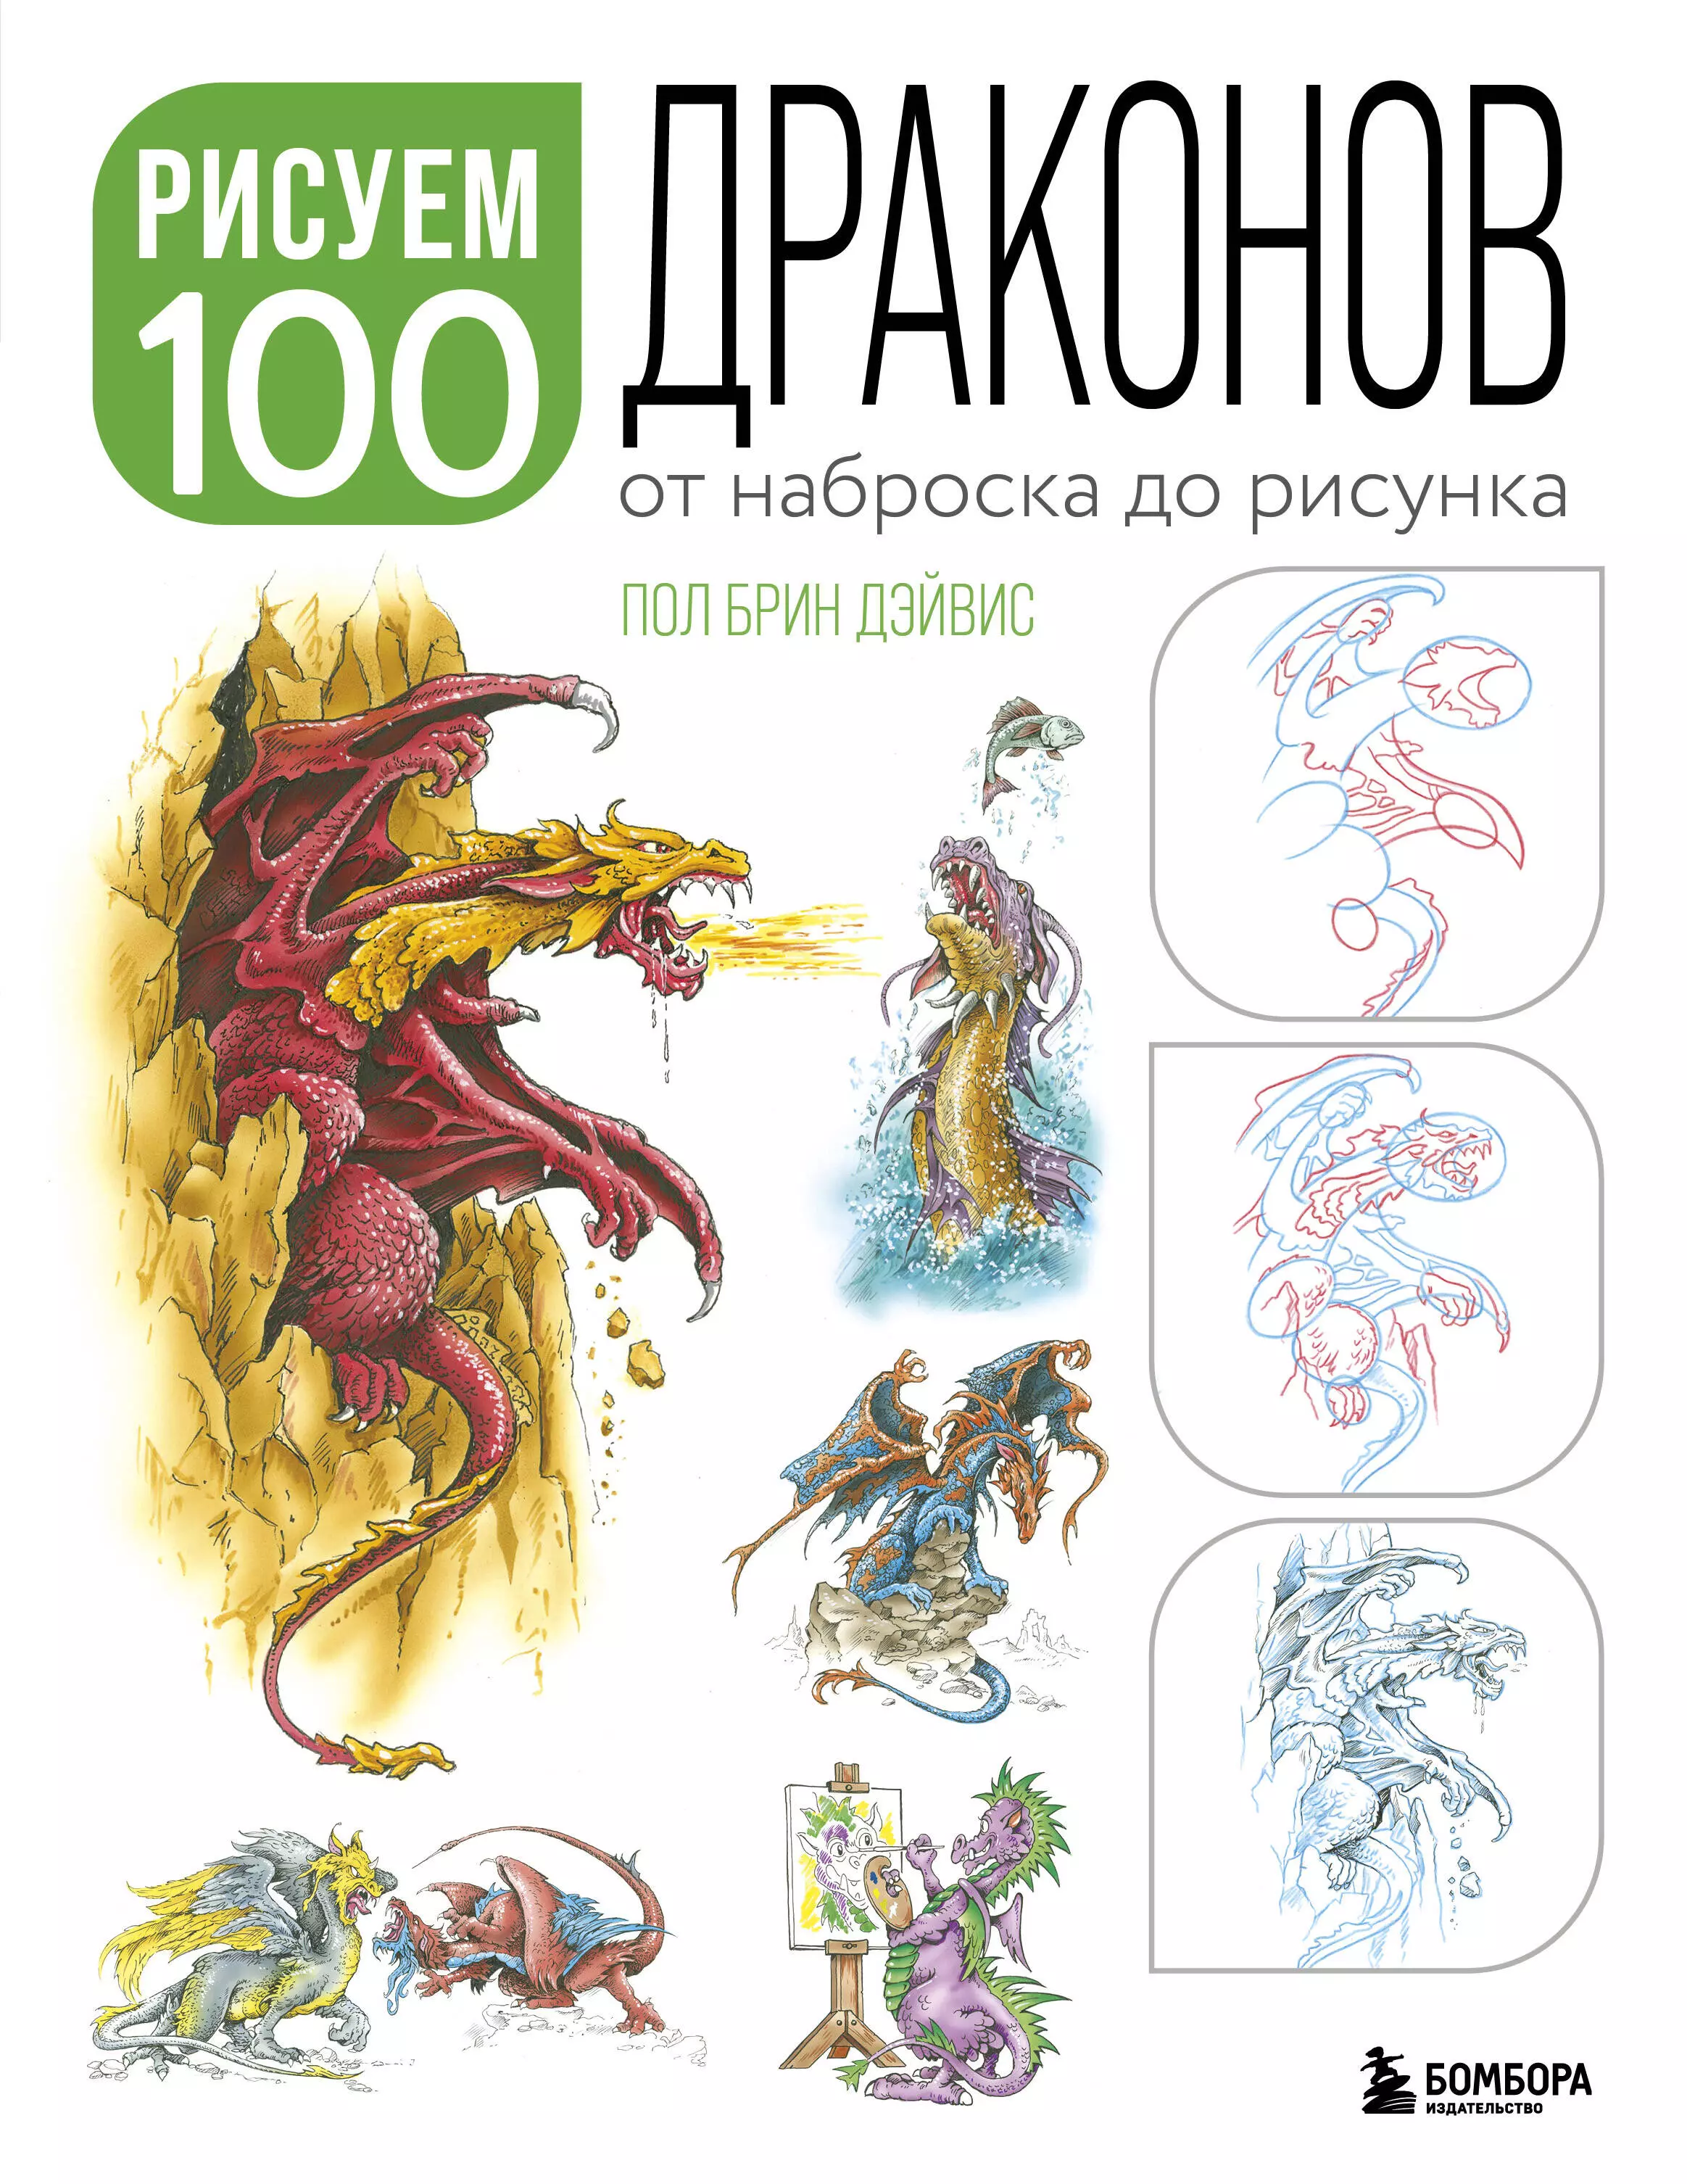 Дэйвис Пол Брин - Рисуем 100 иллюстраций драконов. От наброска до рисунка